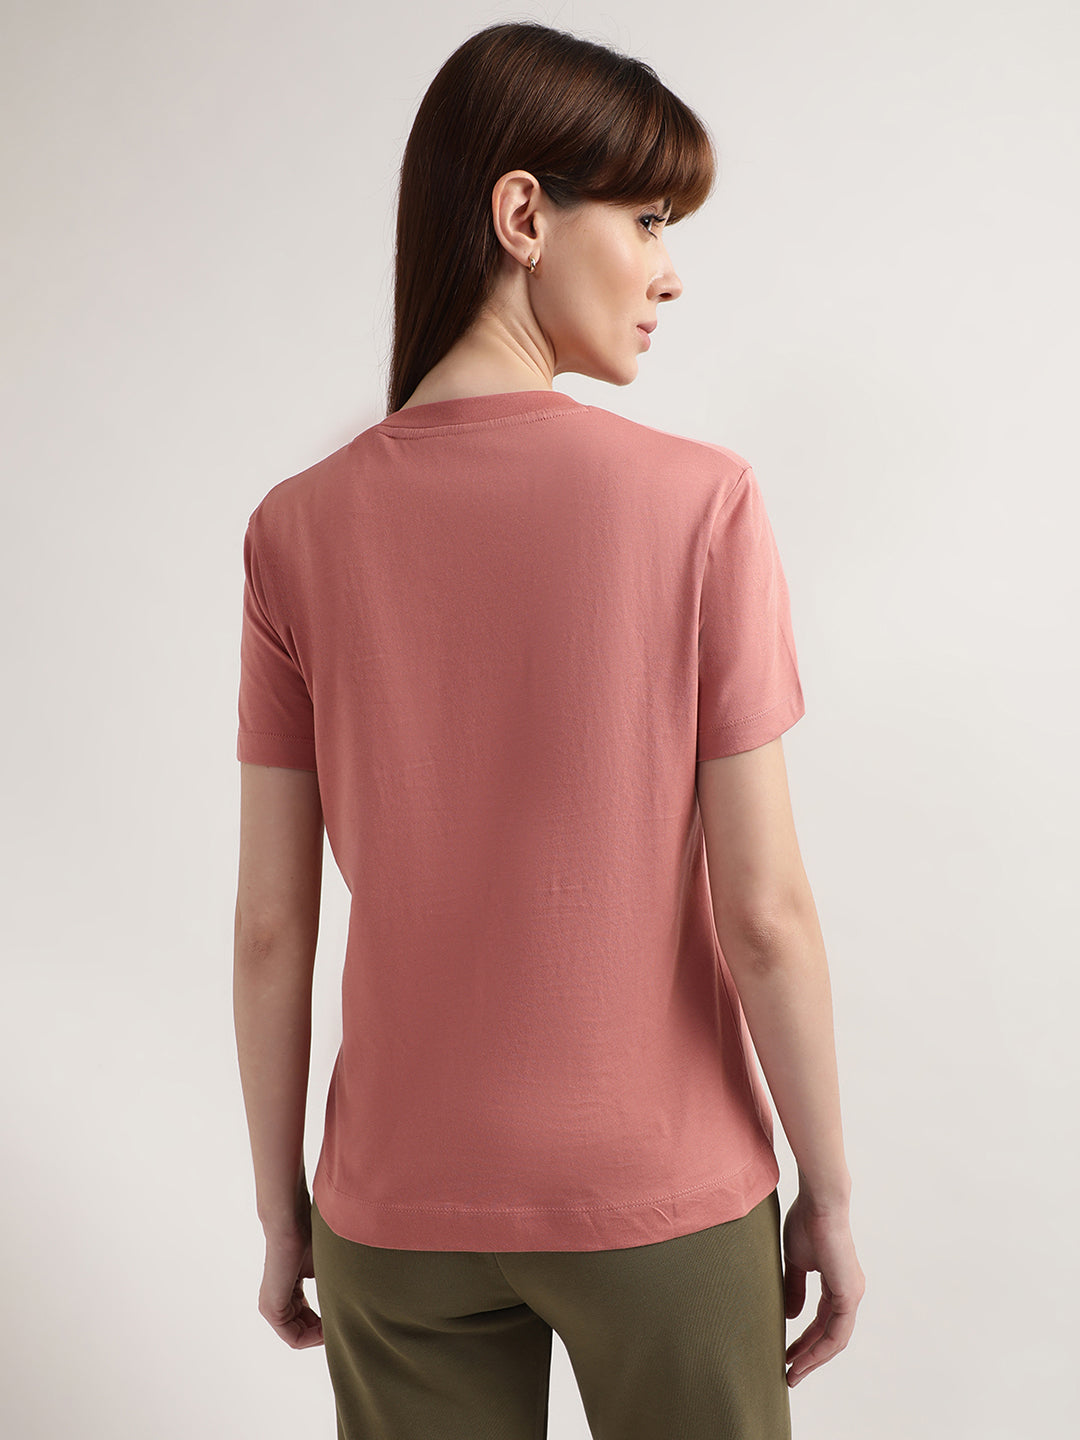 Gant Women Pink T-shirt